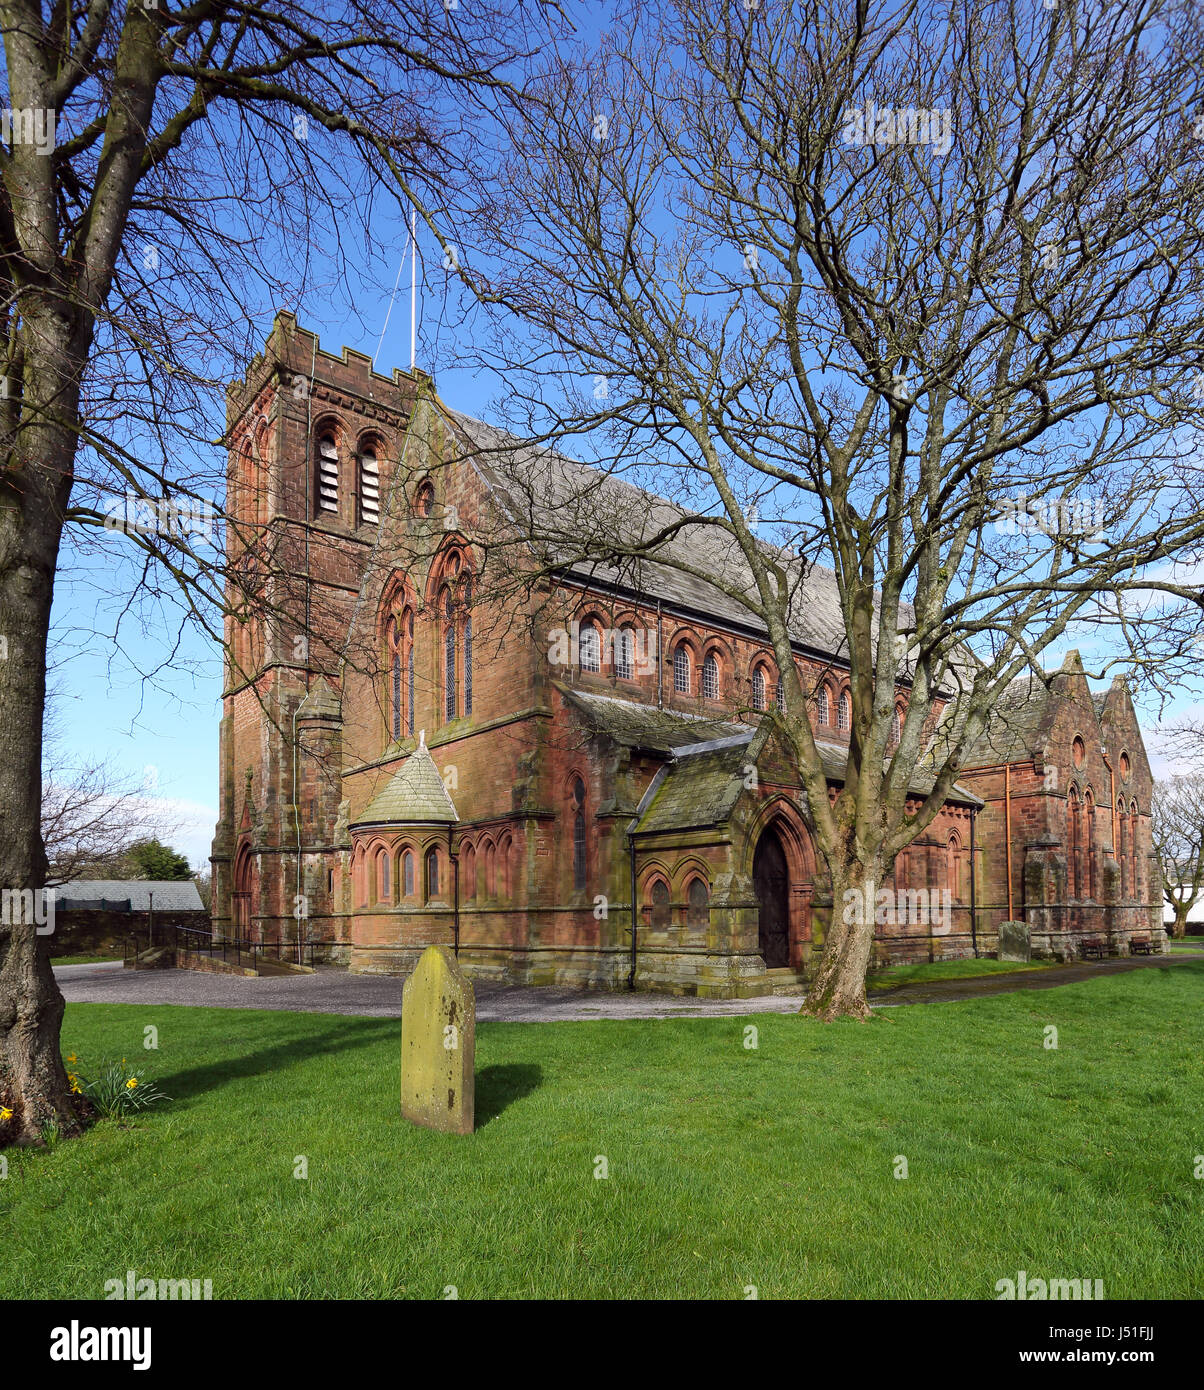 Egremont Church, Egremont, Cumbria, England, UK. Stock Photo